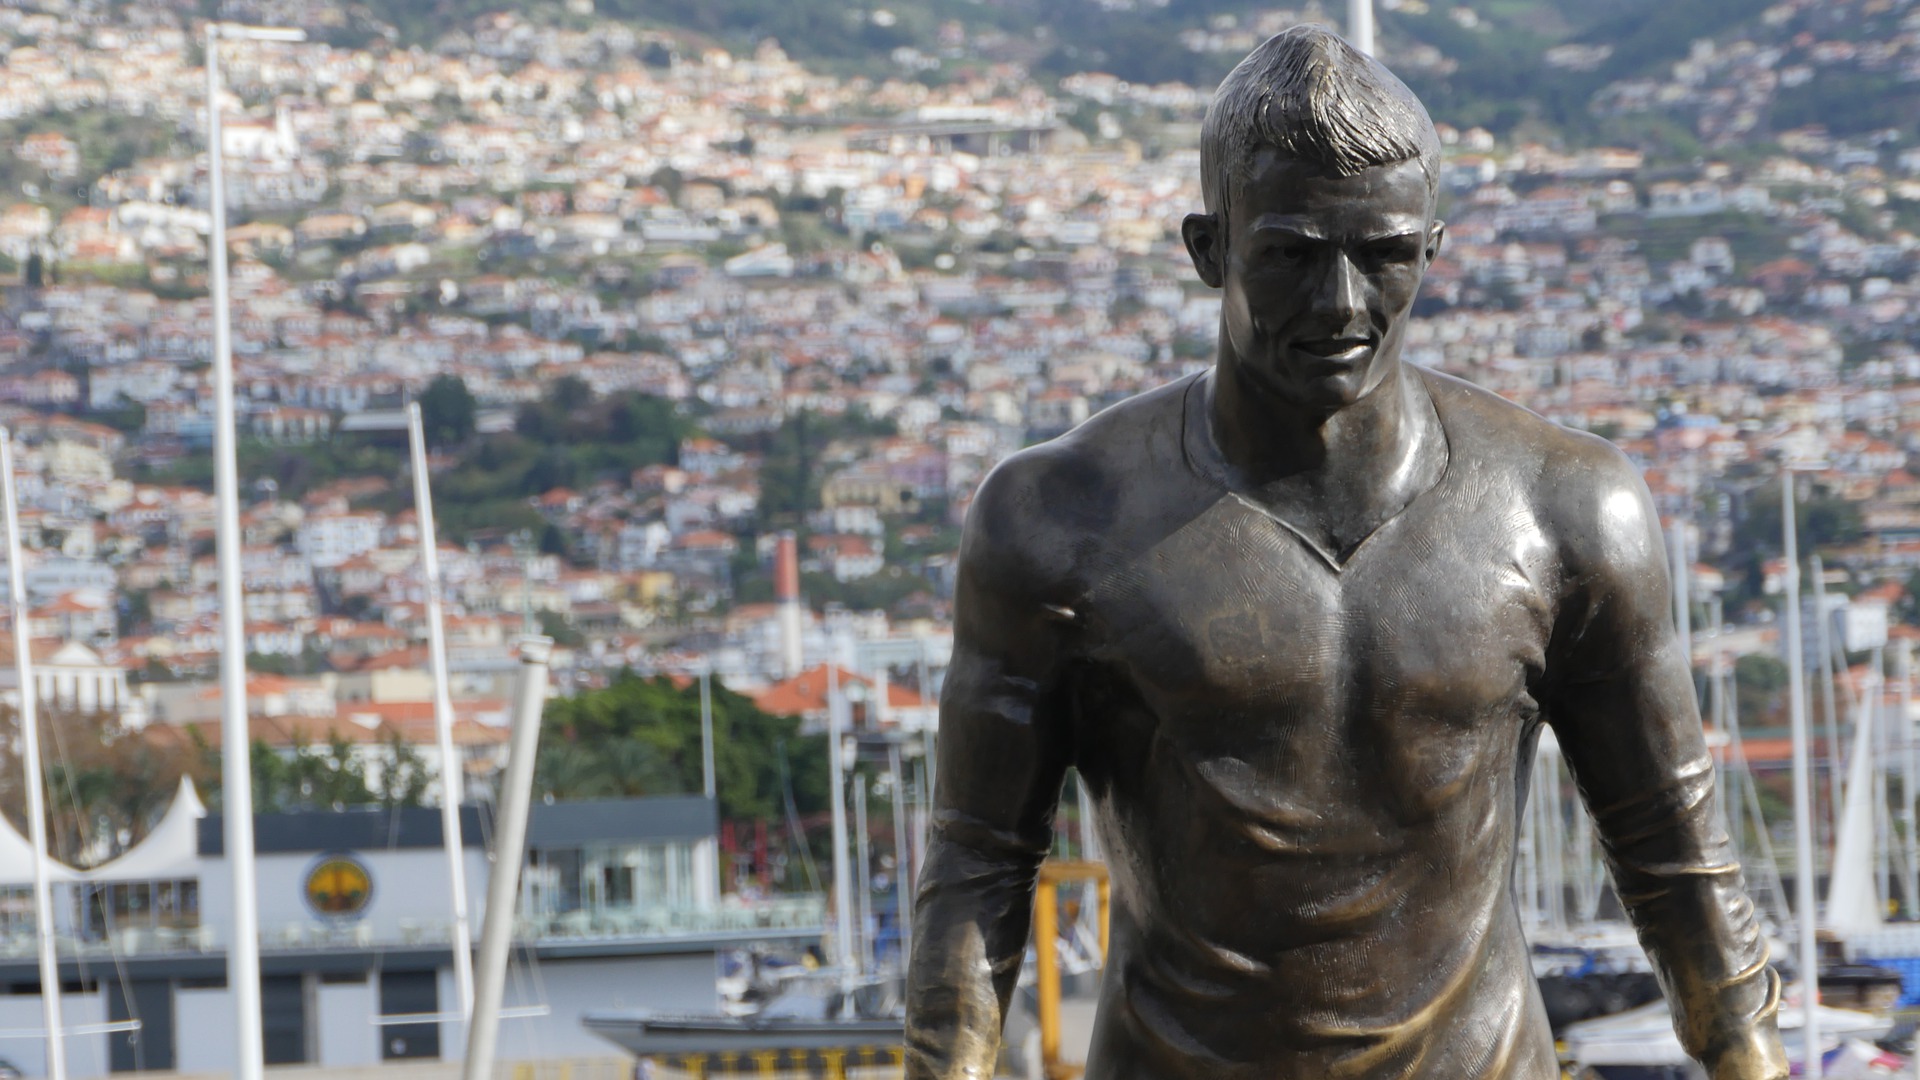 Lire la suite à propos de l’article La Légende de Christiano Ronaldo avec l’ile Madeira